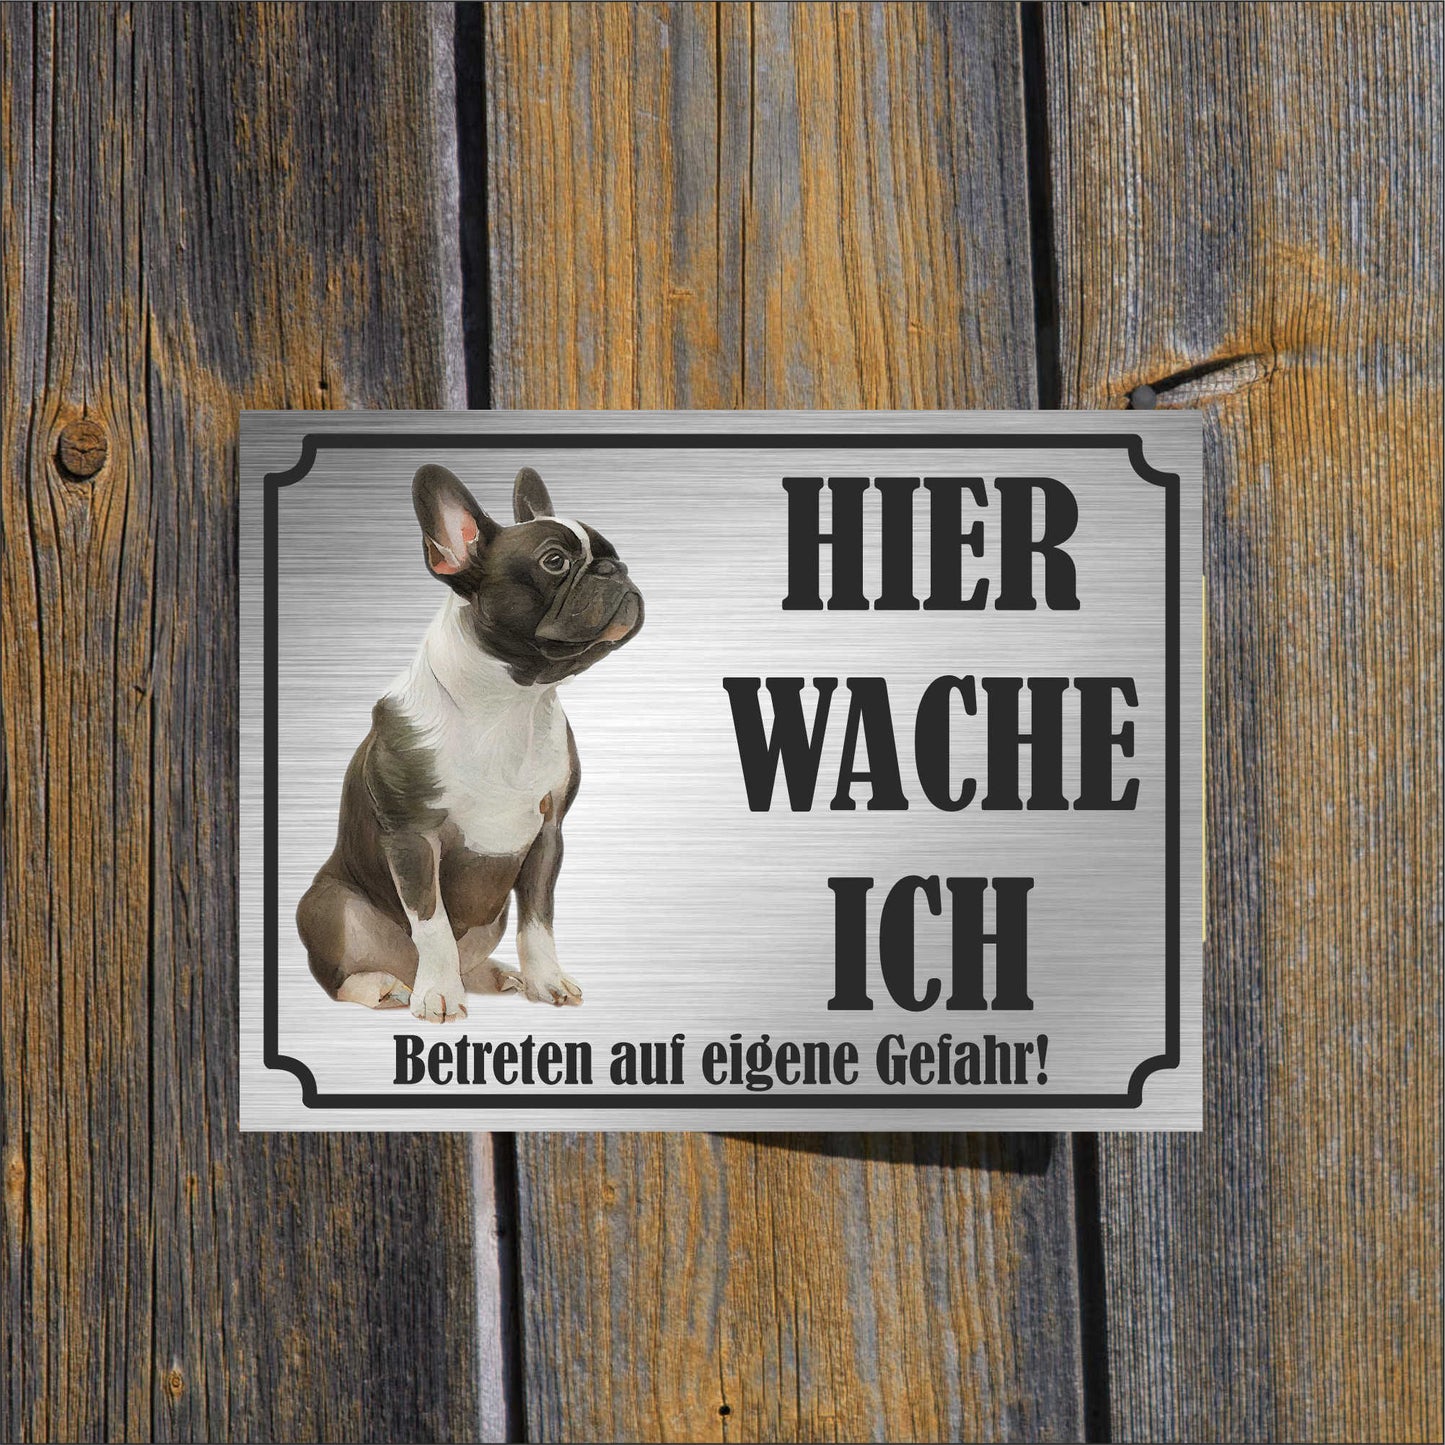 Anatolischer Schäferhund - Schild bedruckt - Hier wache ich - Aluverbundplatte Edelstahl Look